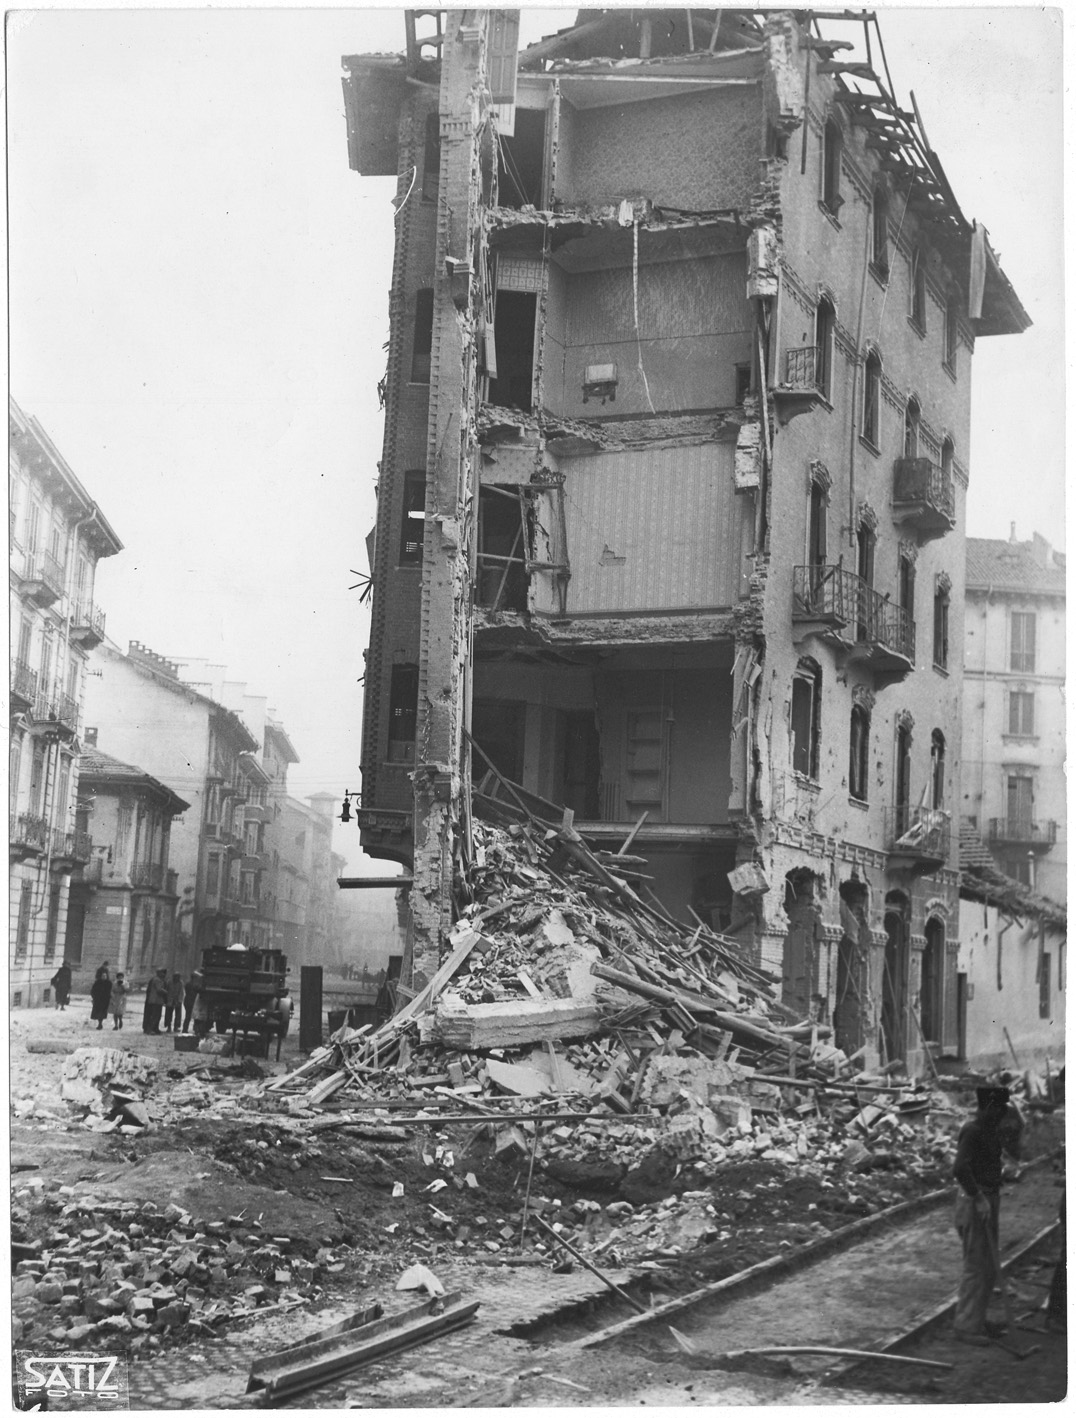 Via Duchessa Jolanda 28 dopo il bombardamento nella notte tra il 20 e il 21 novembre 1942 su Torino (Archivio Storico Città di Torino)